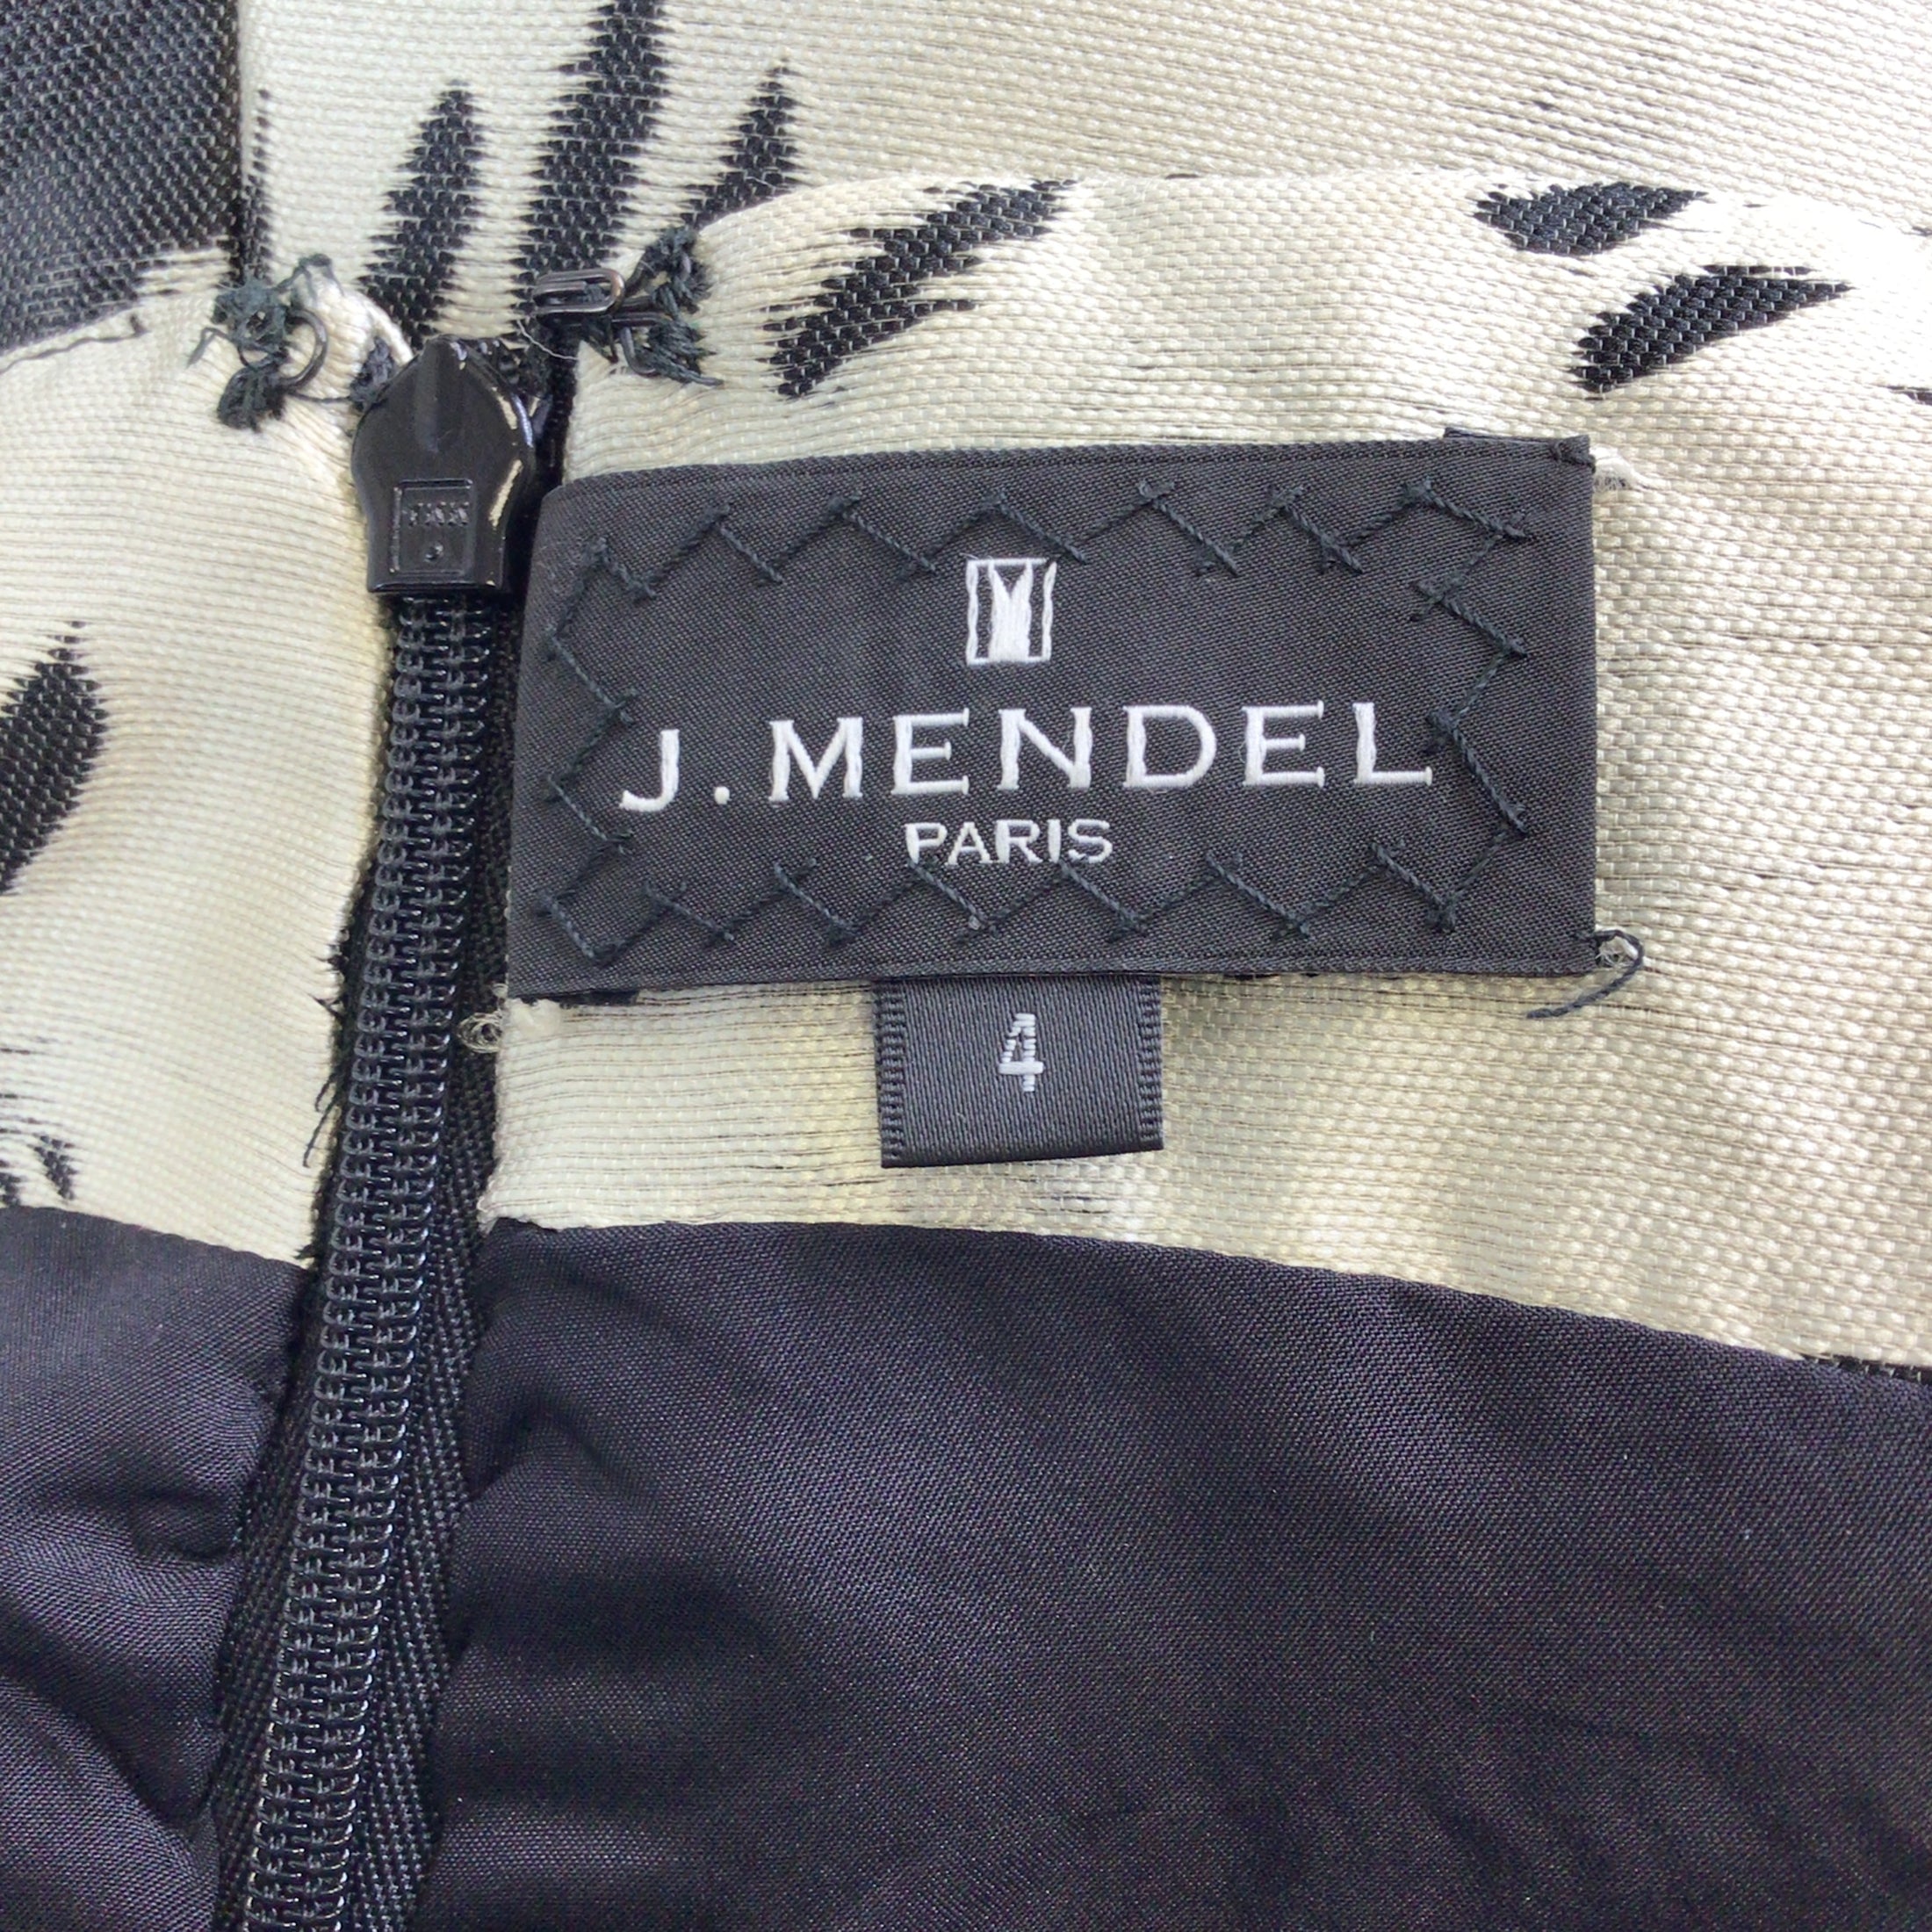 J. Mendel Champagne / Black Lambskin Leather Trimmed Off-the-Shoulder Jacquard Dress